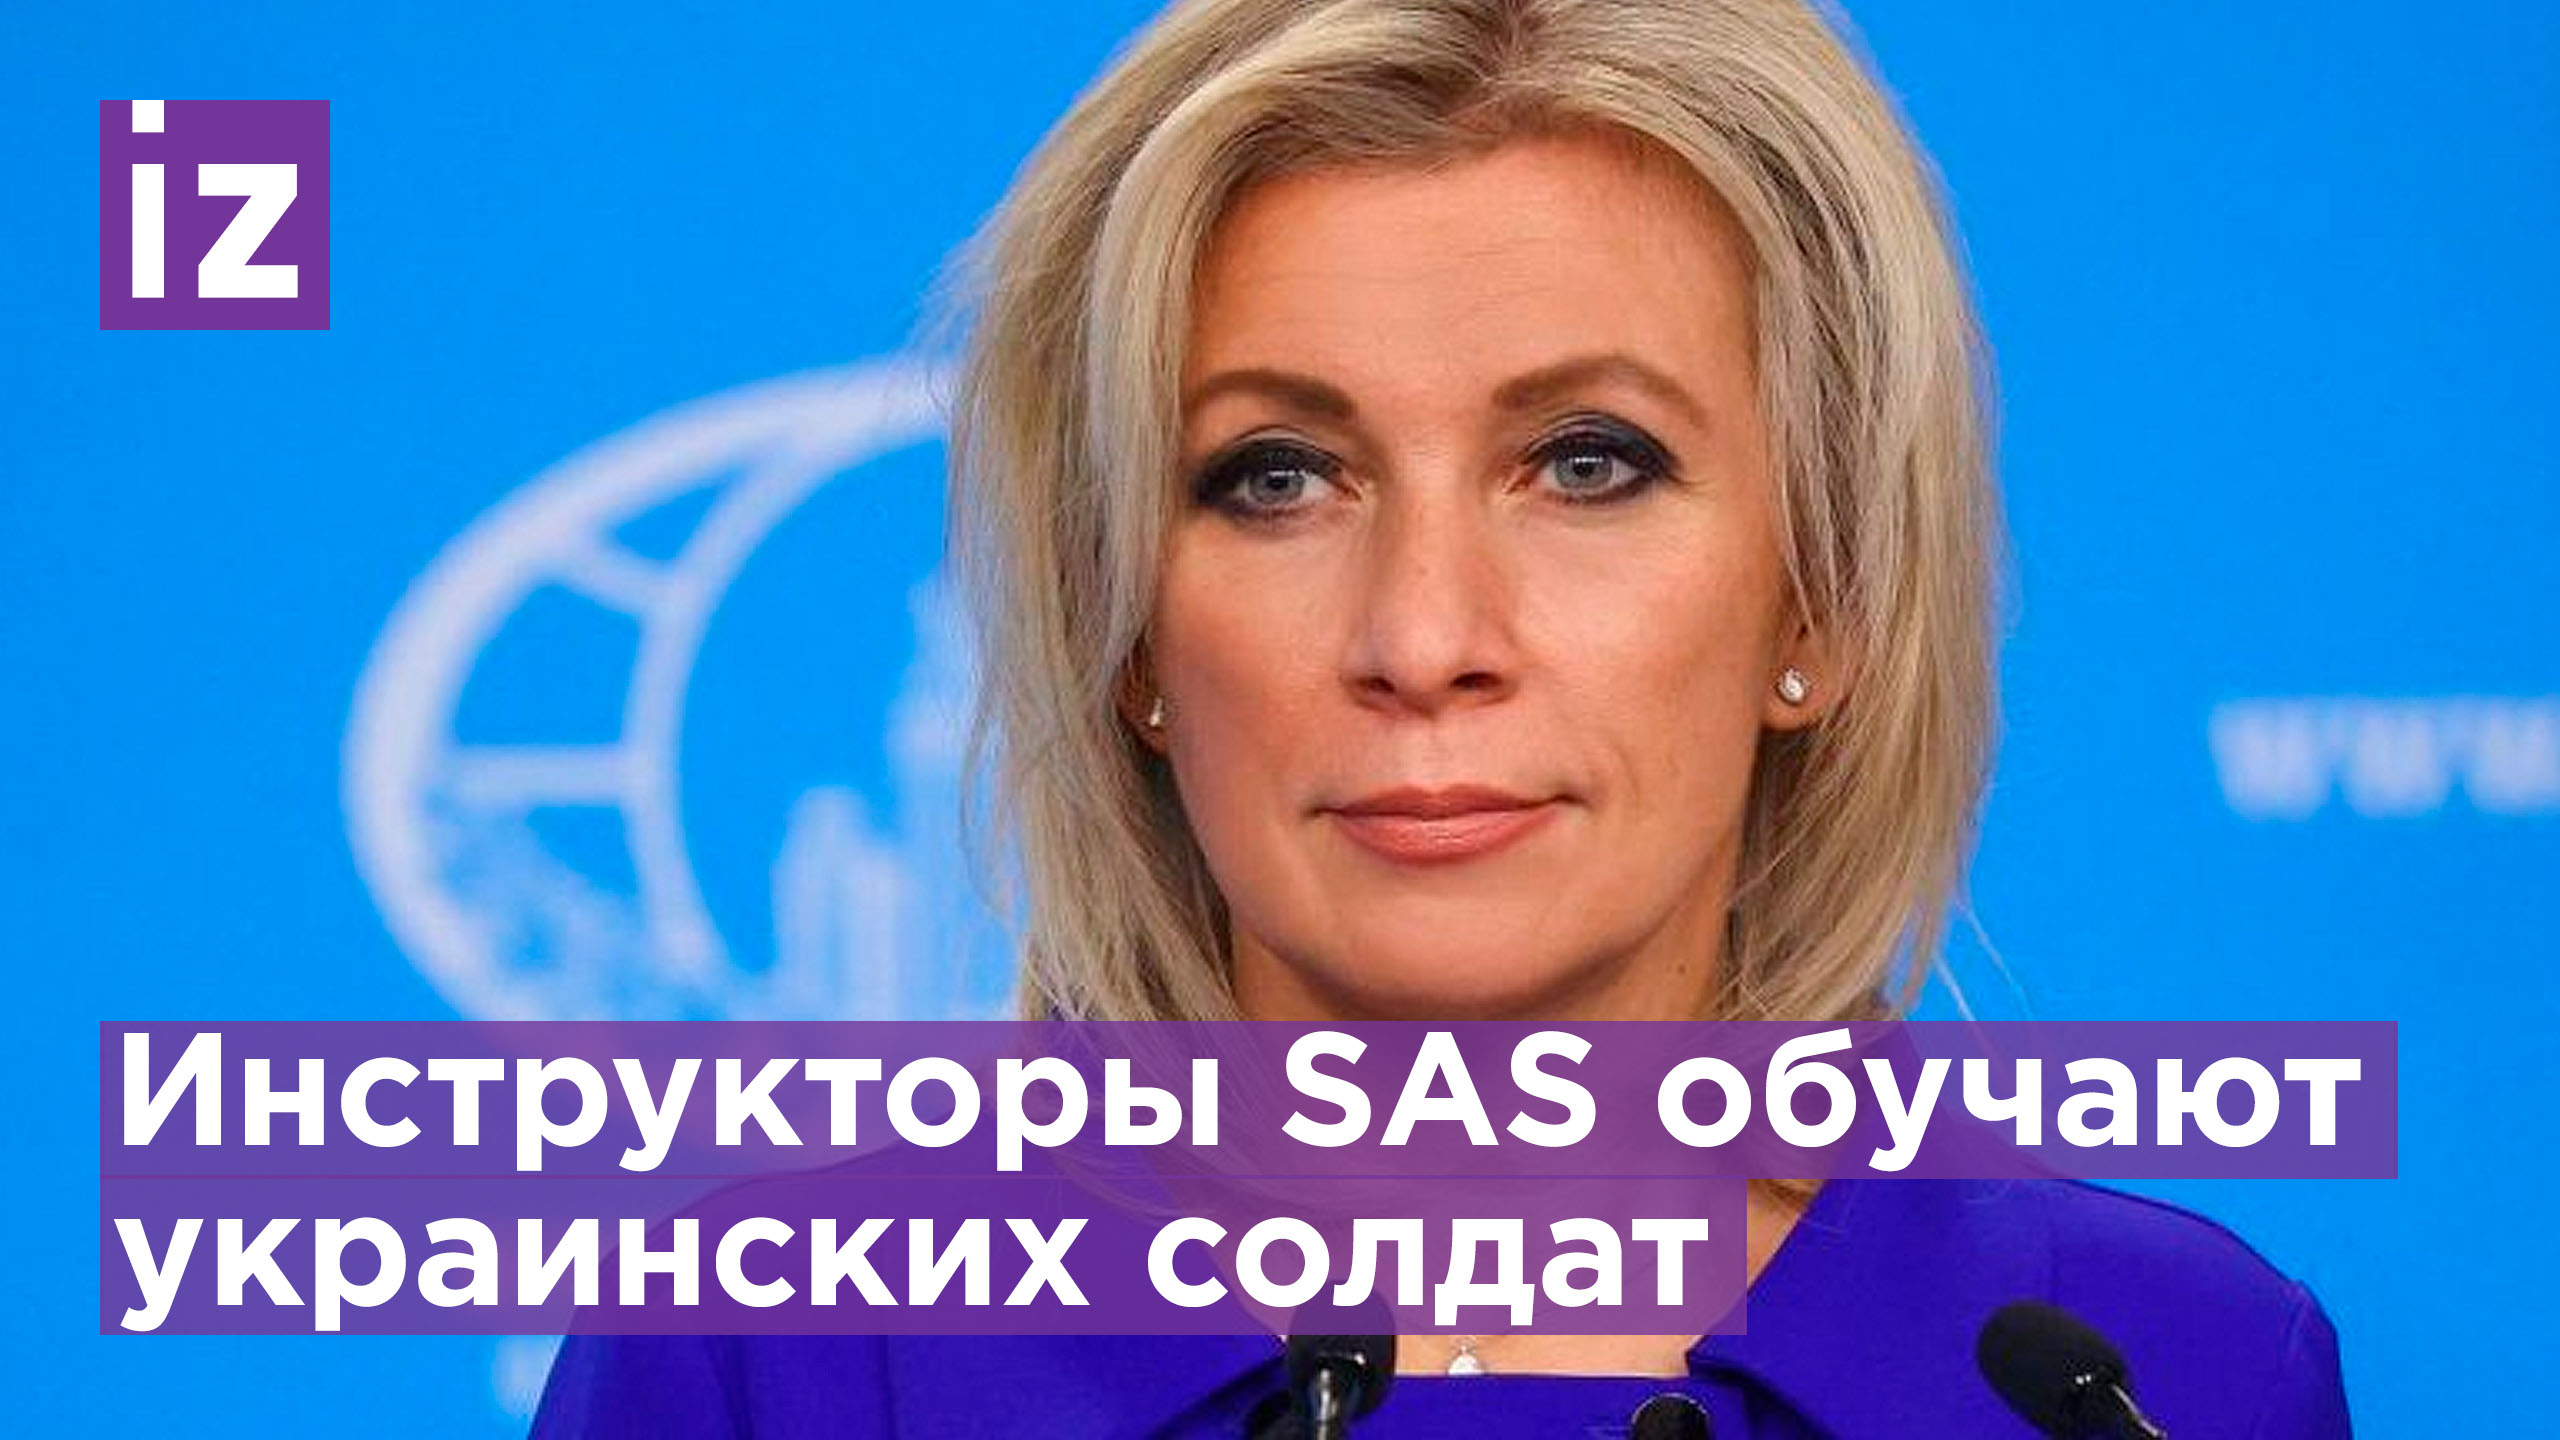 Захарова про бойцов SAS на Украине / Известия